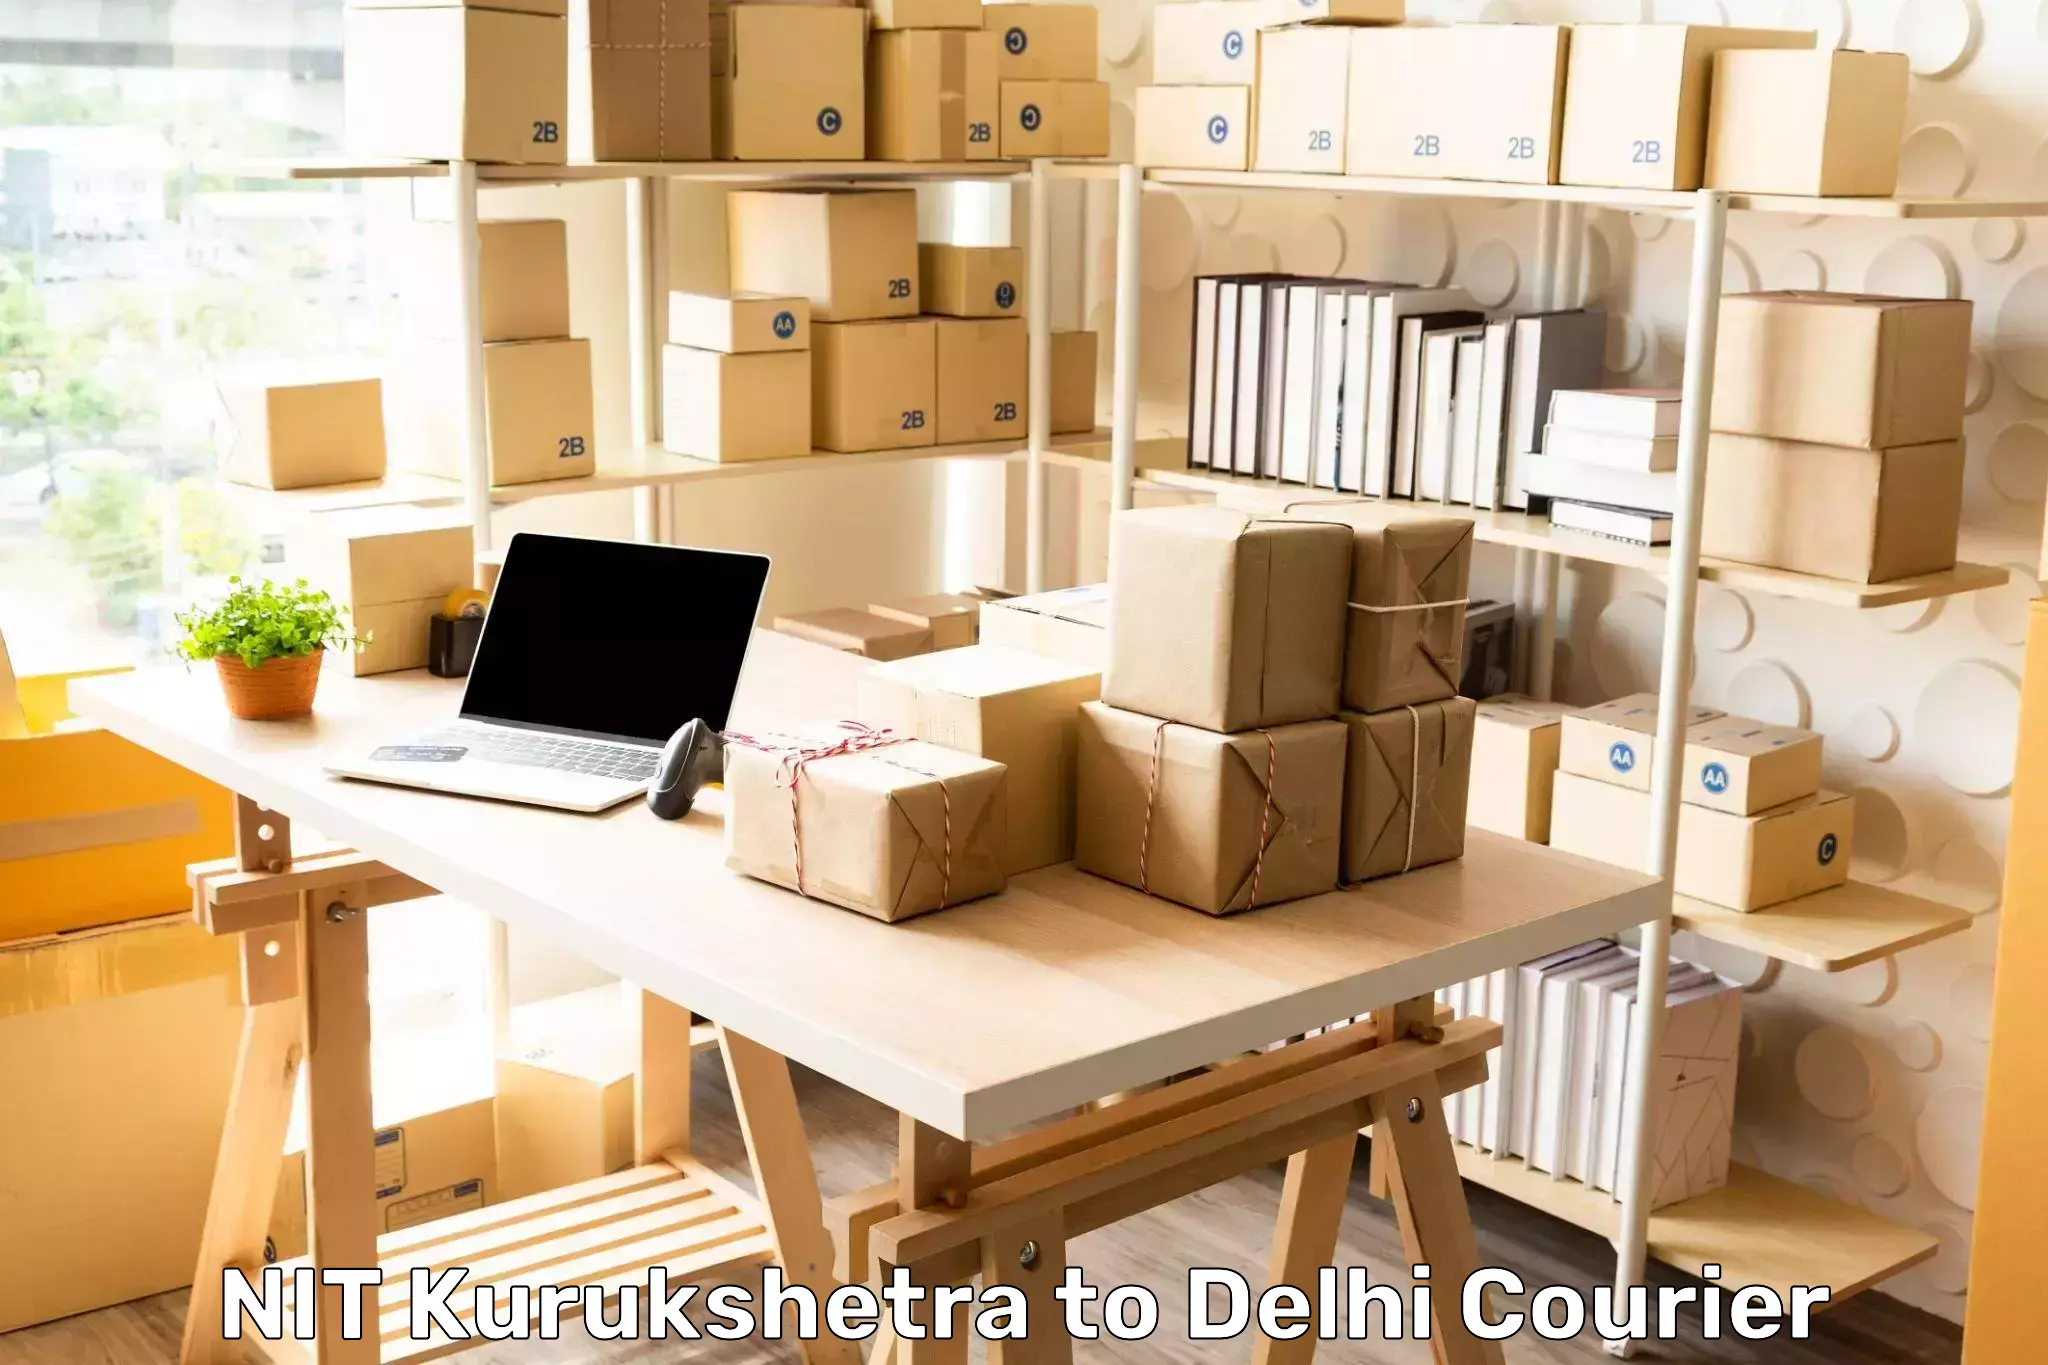 Door-to-door shipment NIT Kurukshetra to Jawaharlal Nehru University New Delhi